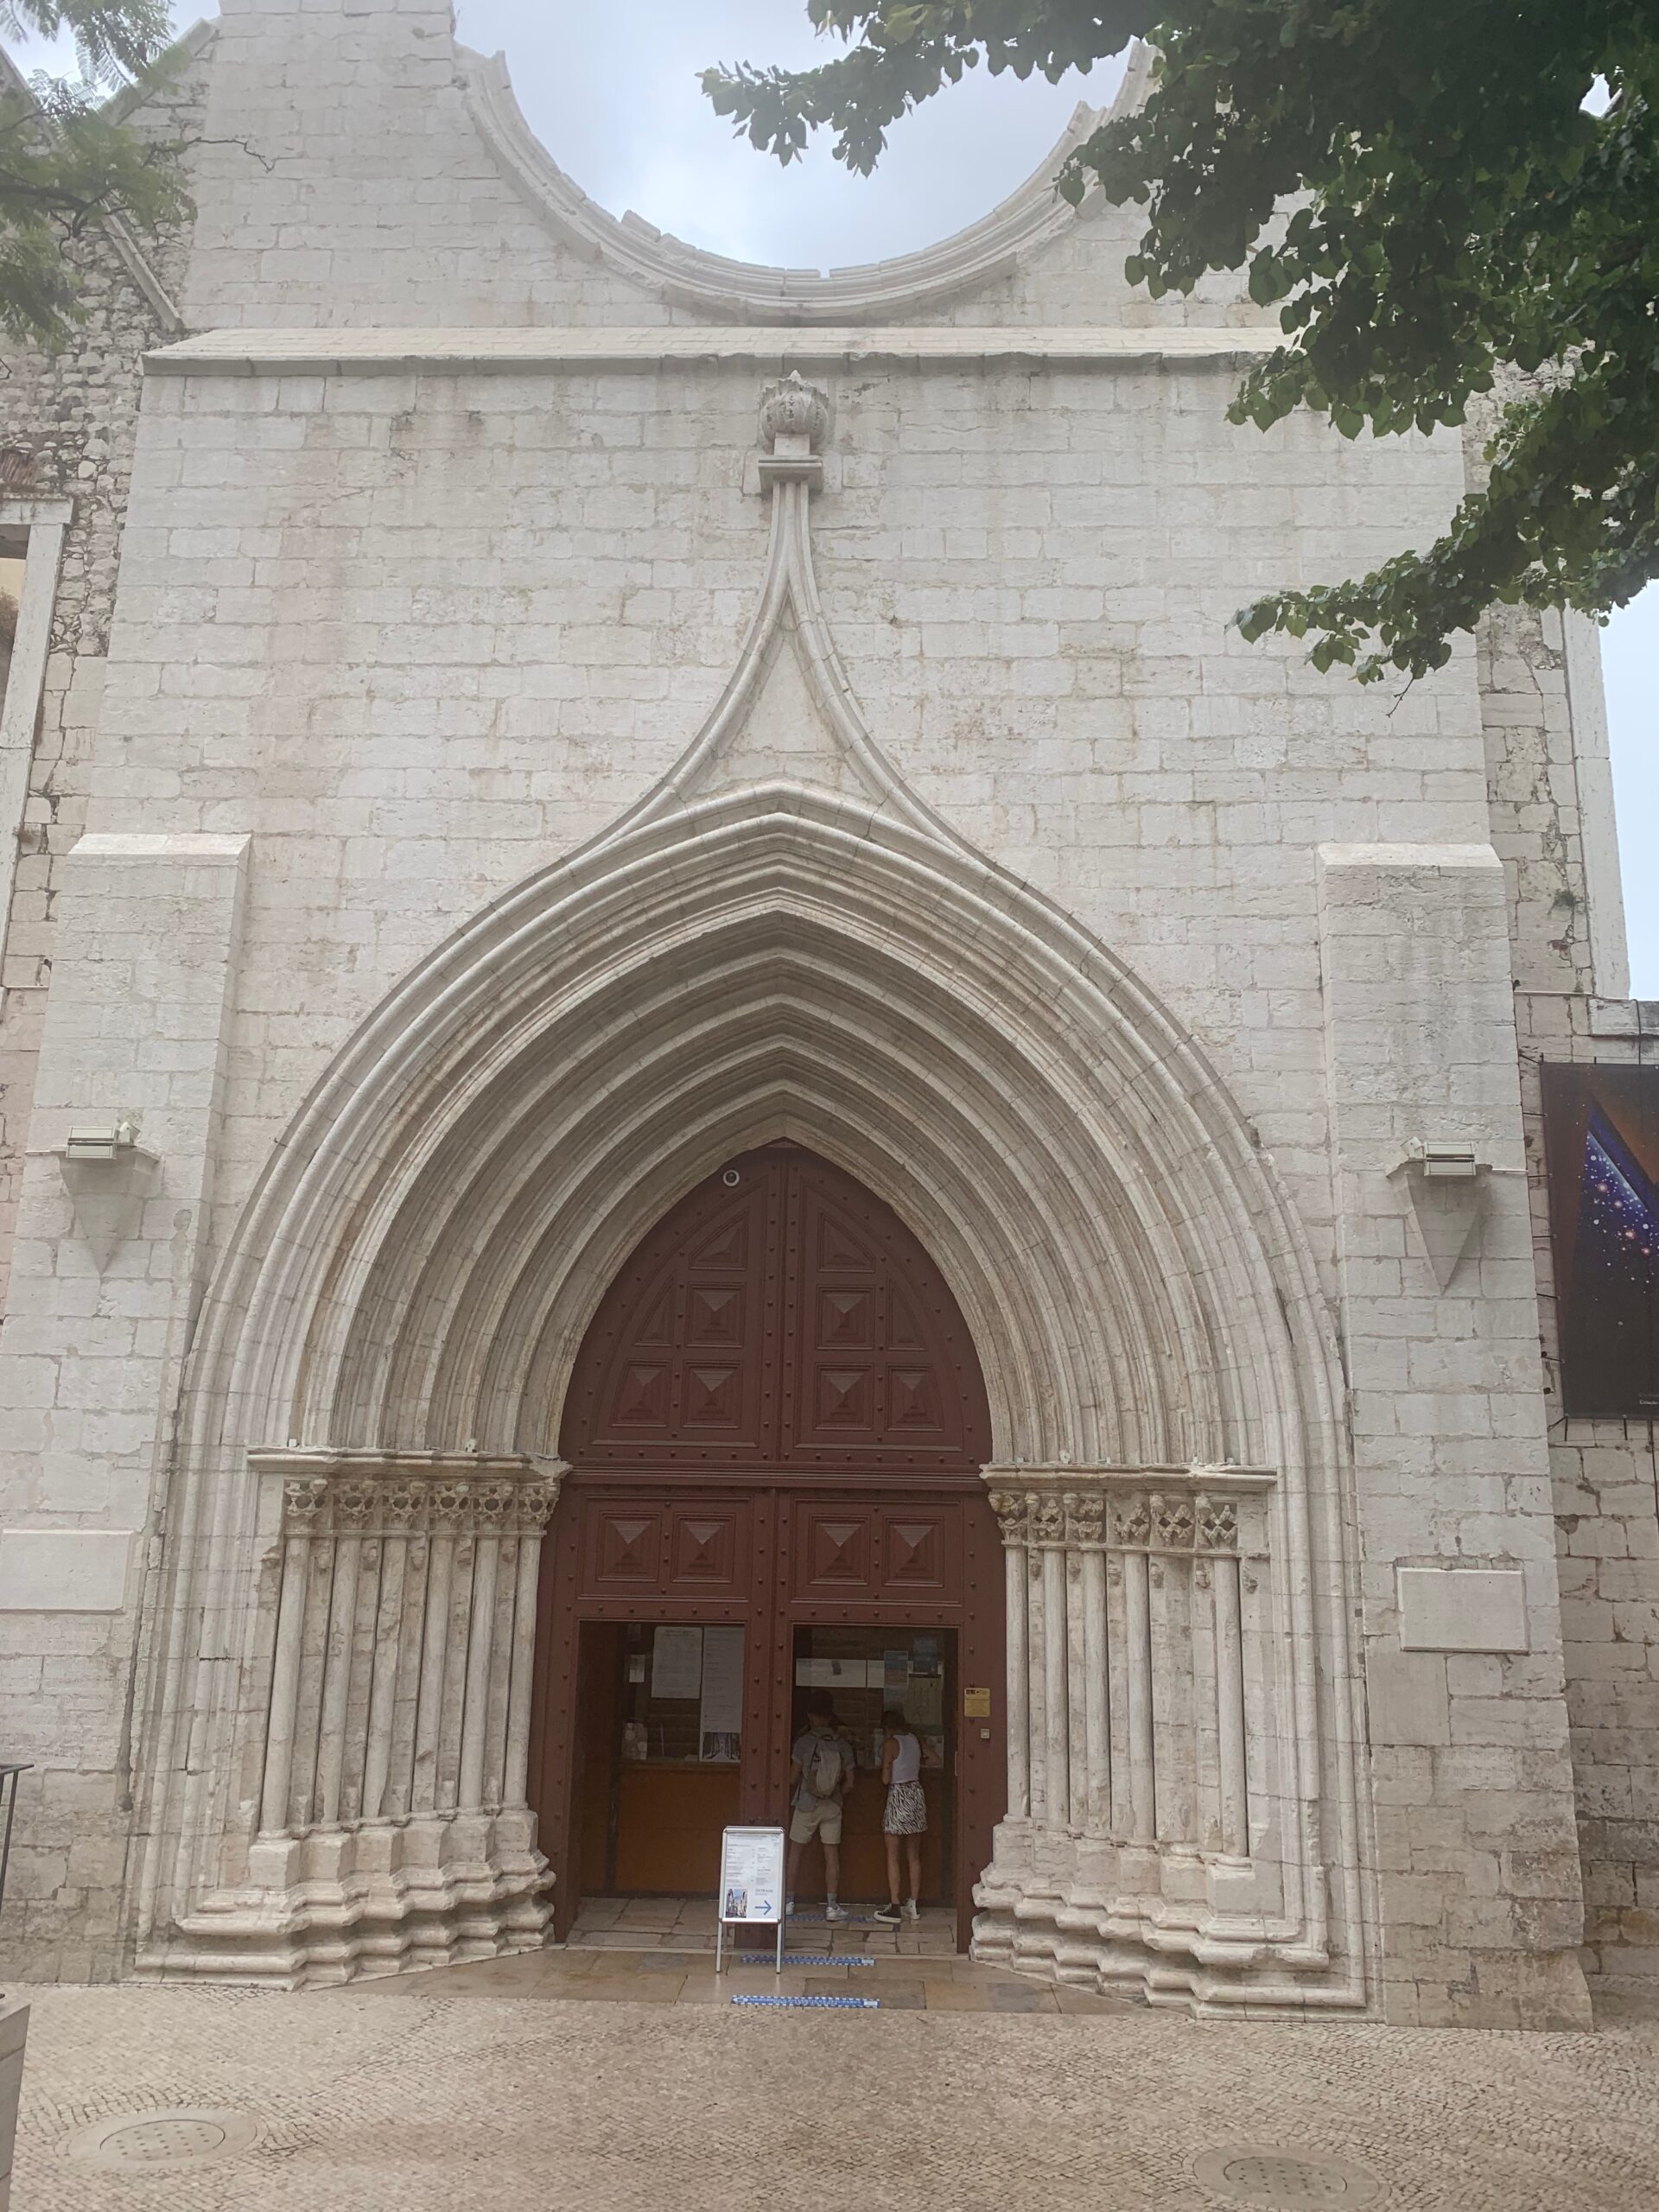 Gothic entrance to Convento do Carmo.